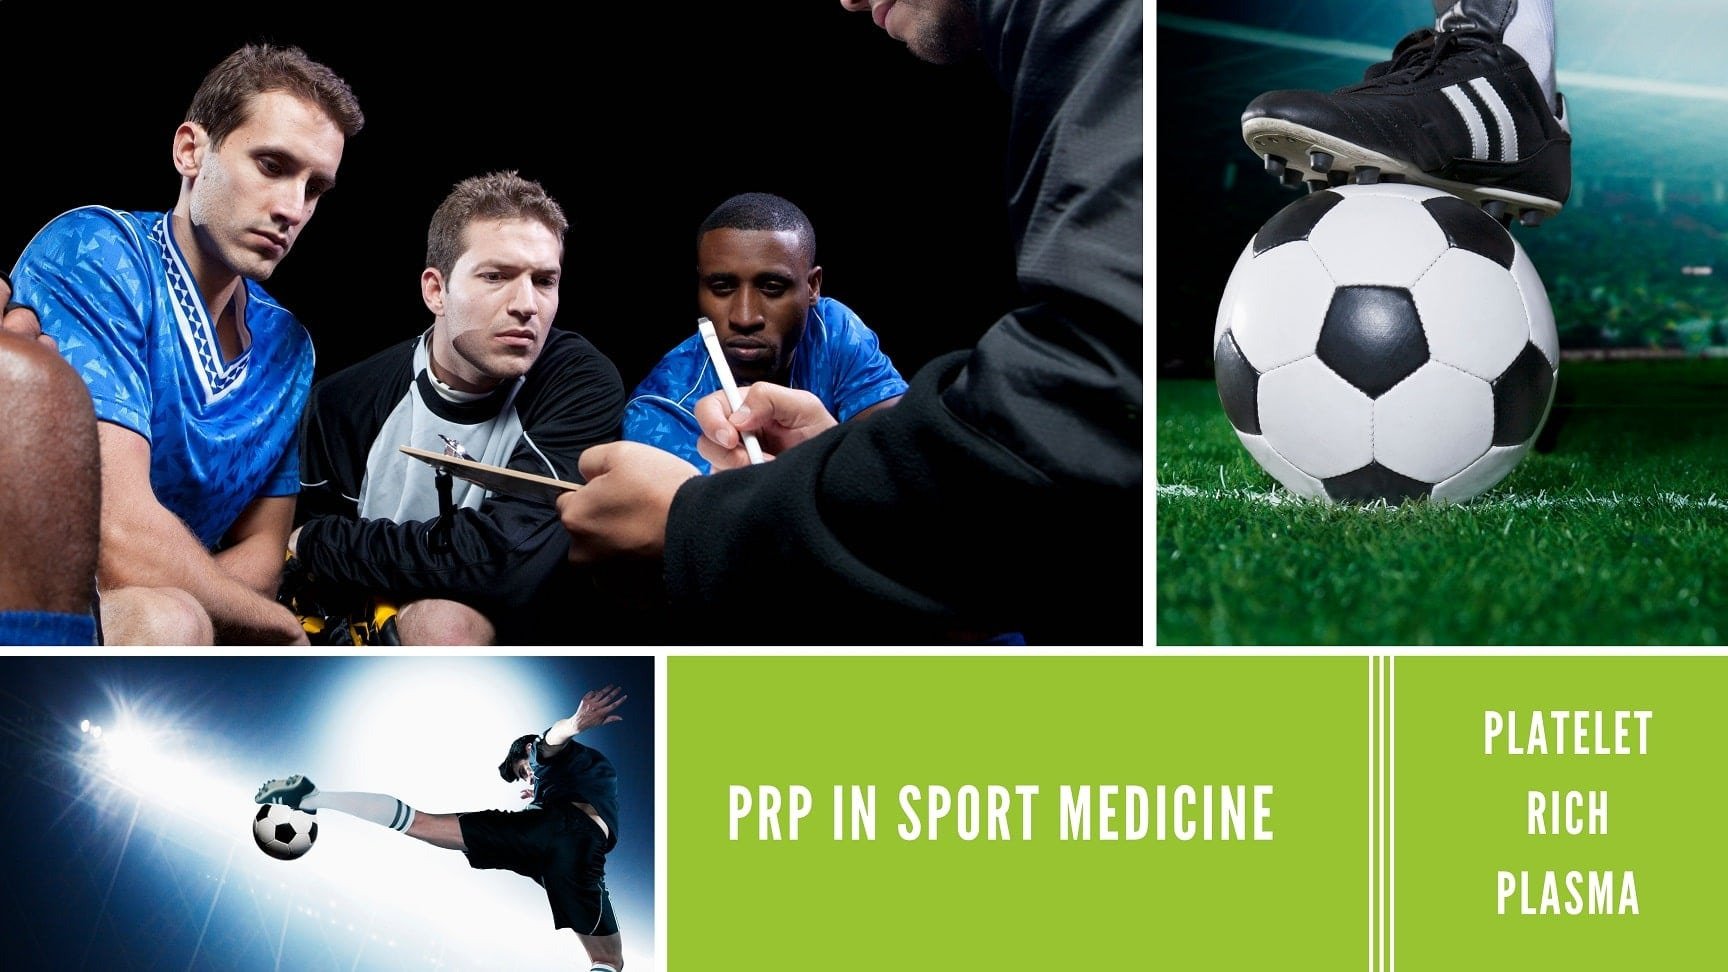 Tratamiento con PRP en medicina deportiva